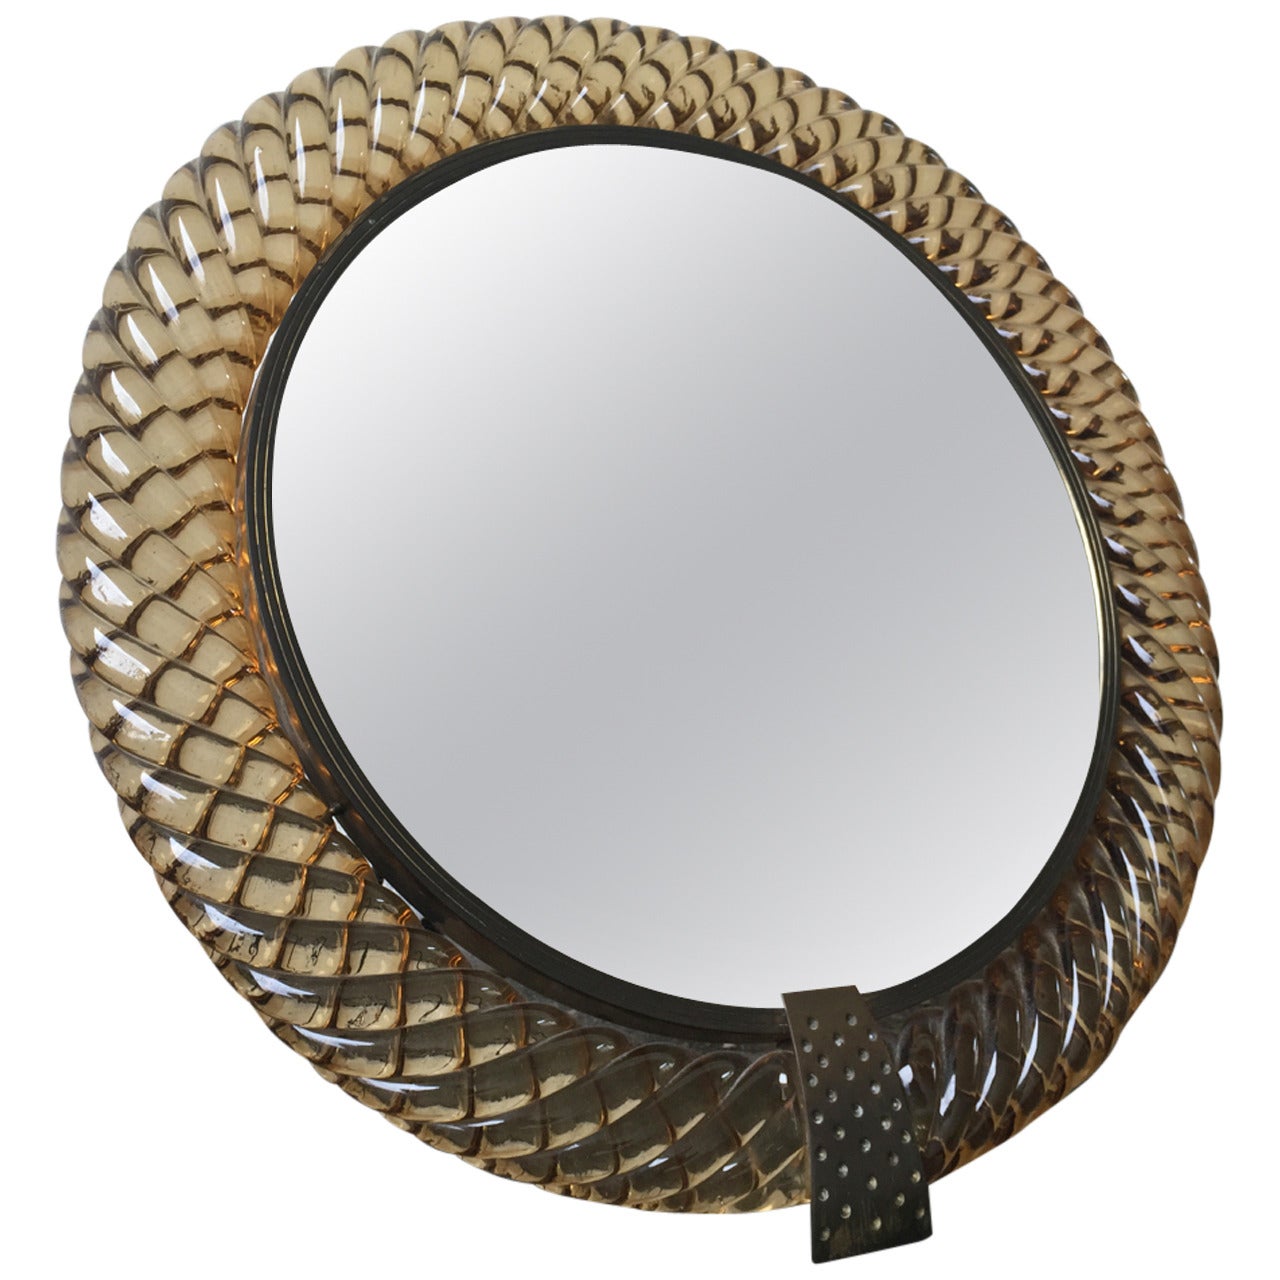 Treccia Vanity Mirror by Carlo Scarpa for Venini, Murano